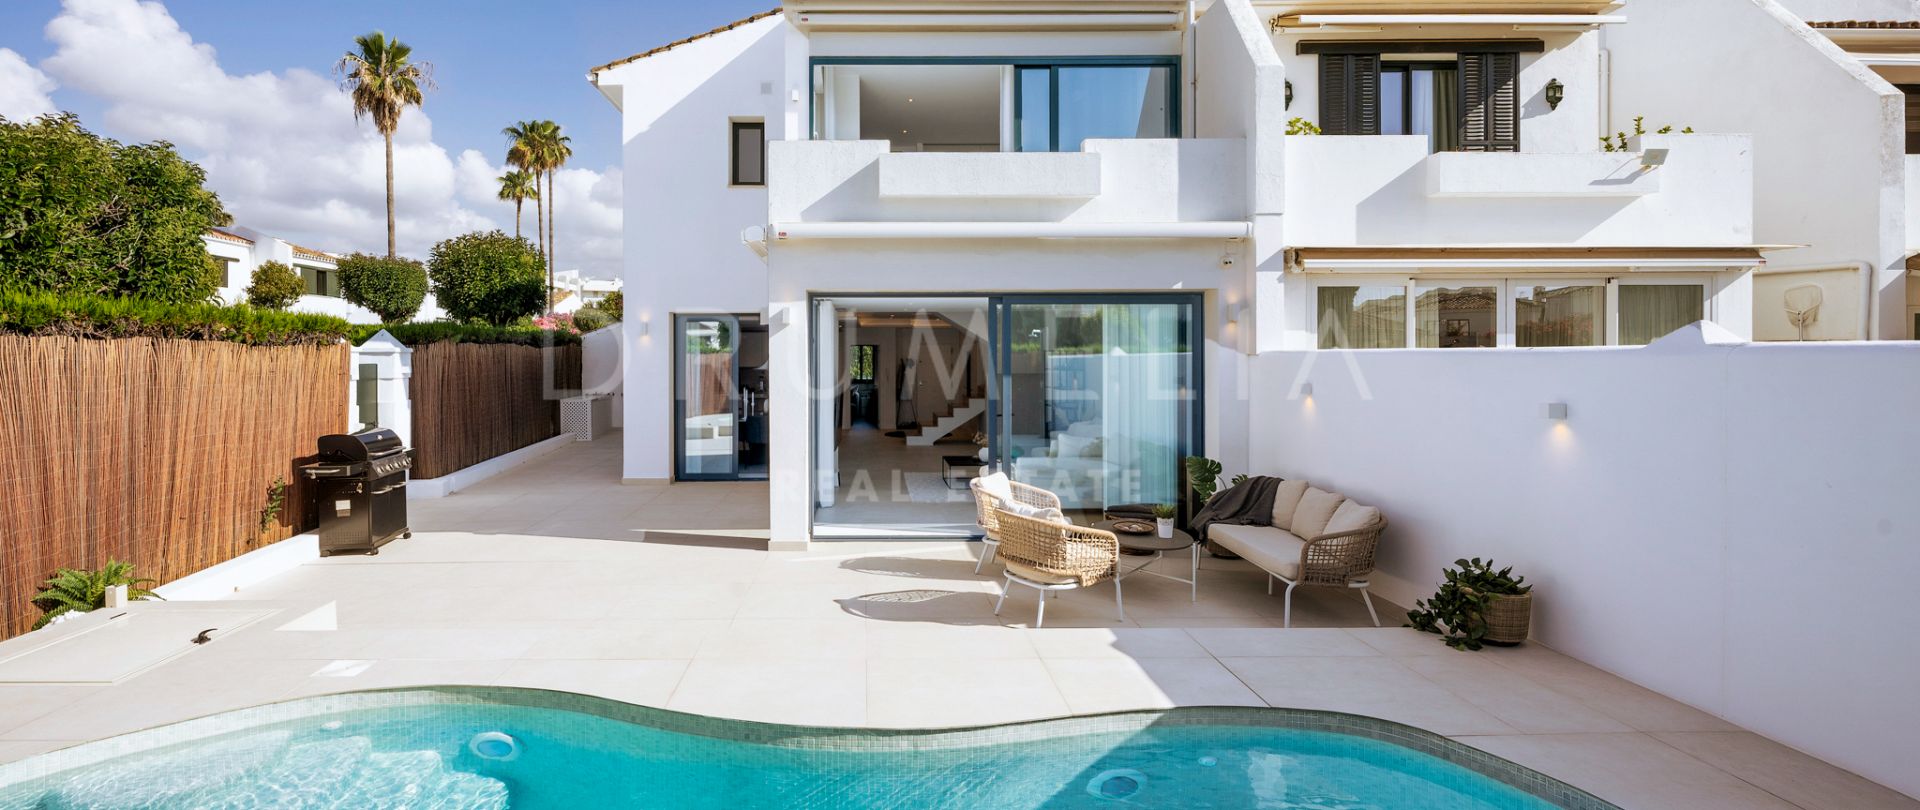 Preciosa casa adosada de lujo reformada con jardín y piscina en San Pedro de Alcántara, Marbella